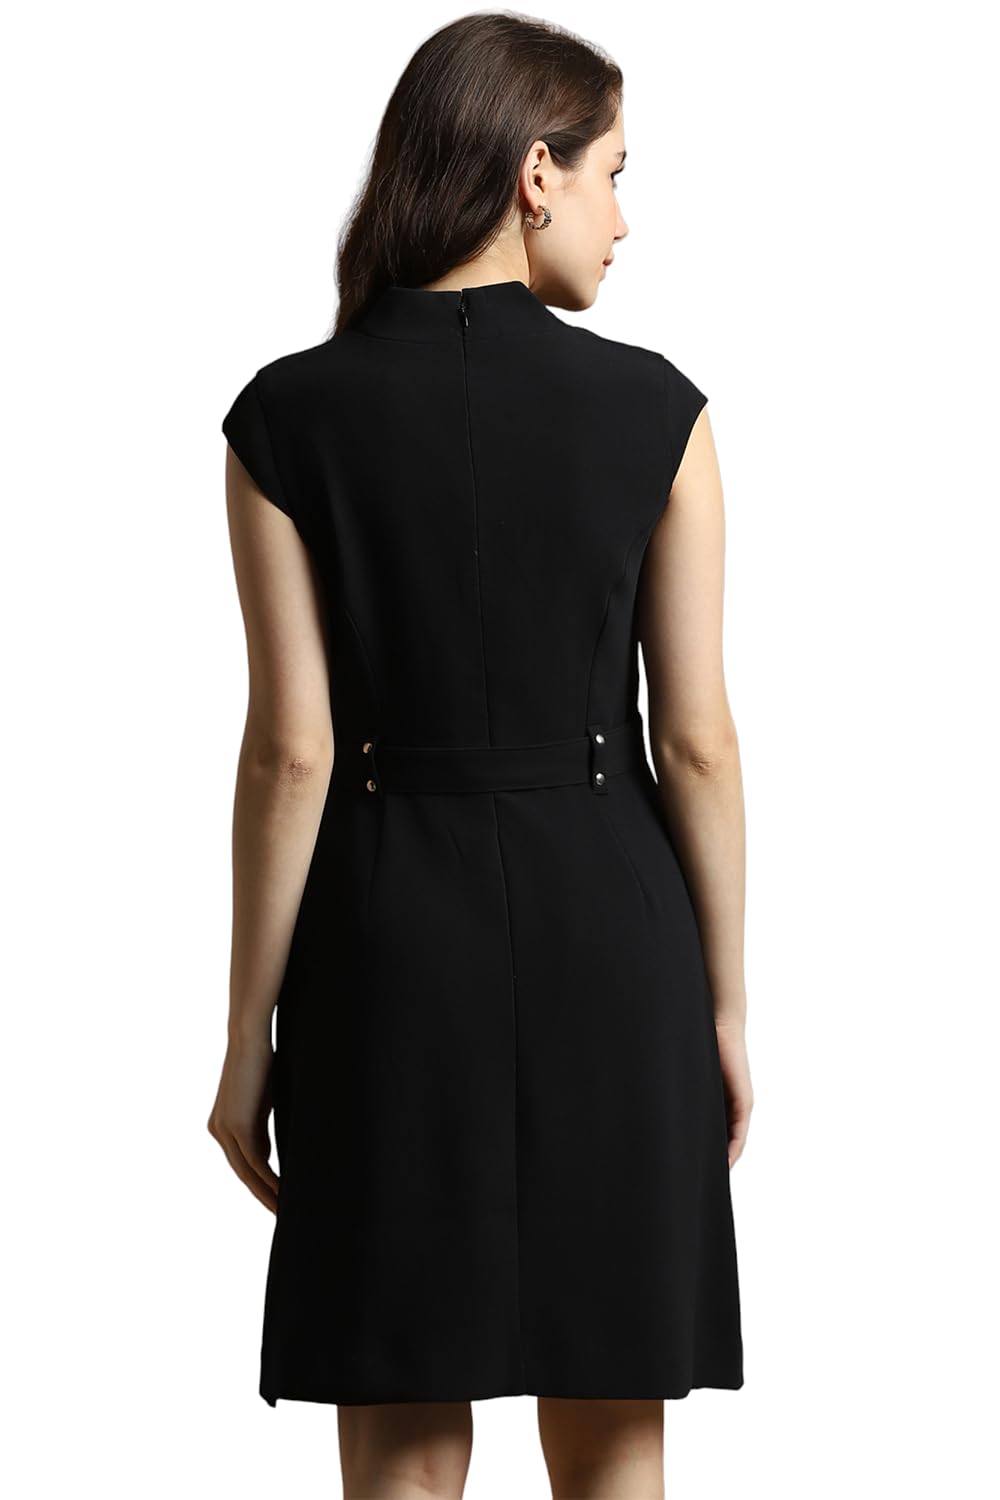 Buy Allen Solly Women Multi Print Casual Dress online